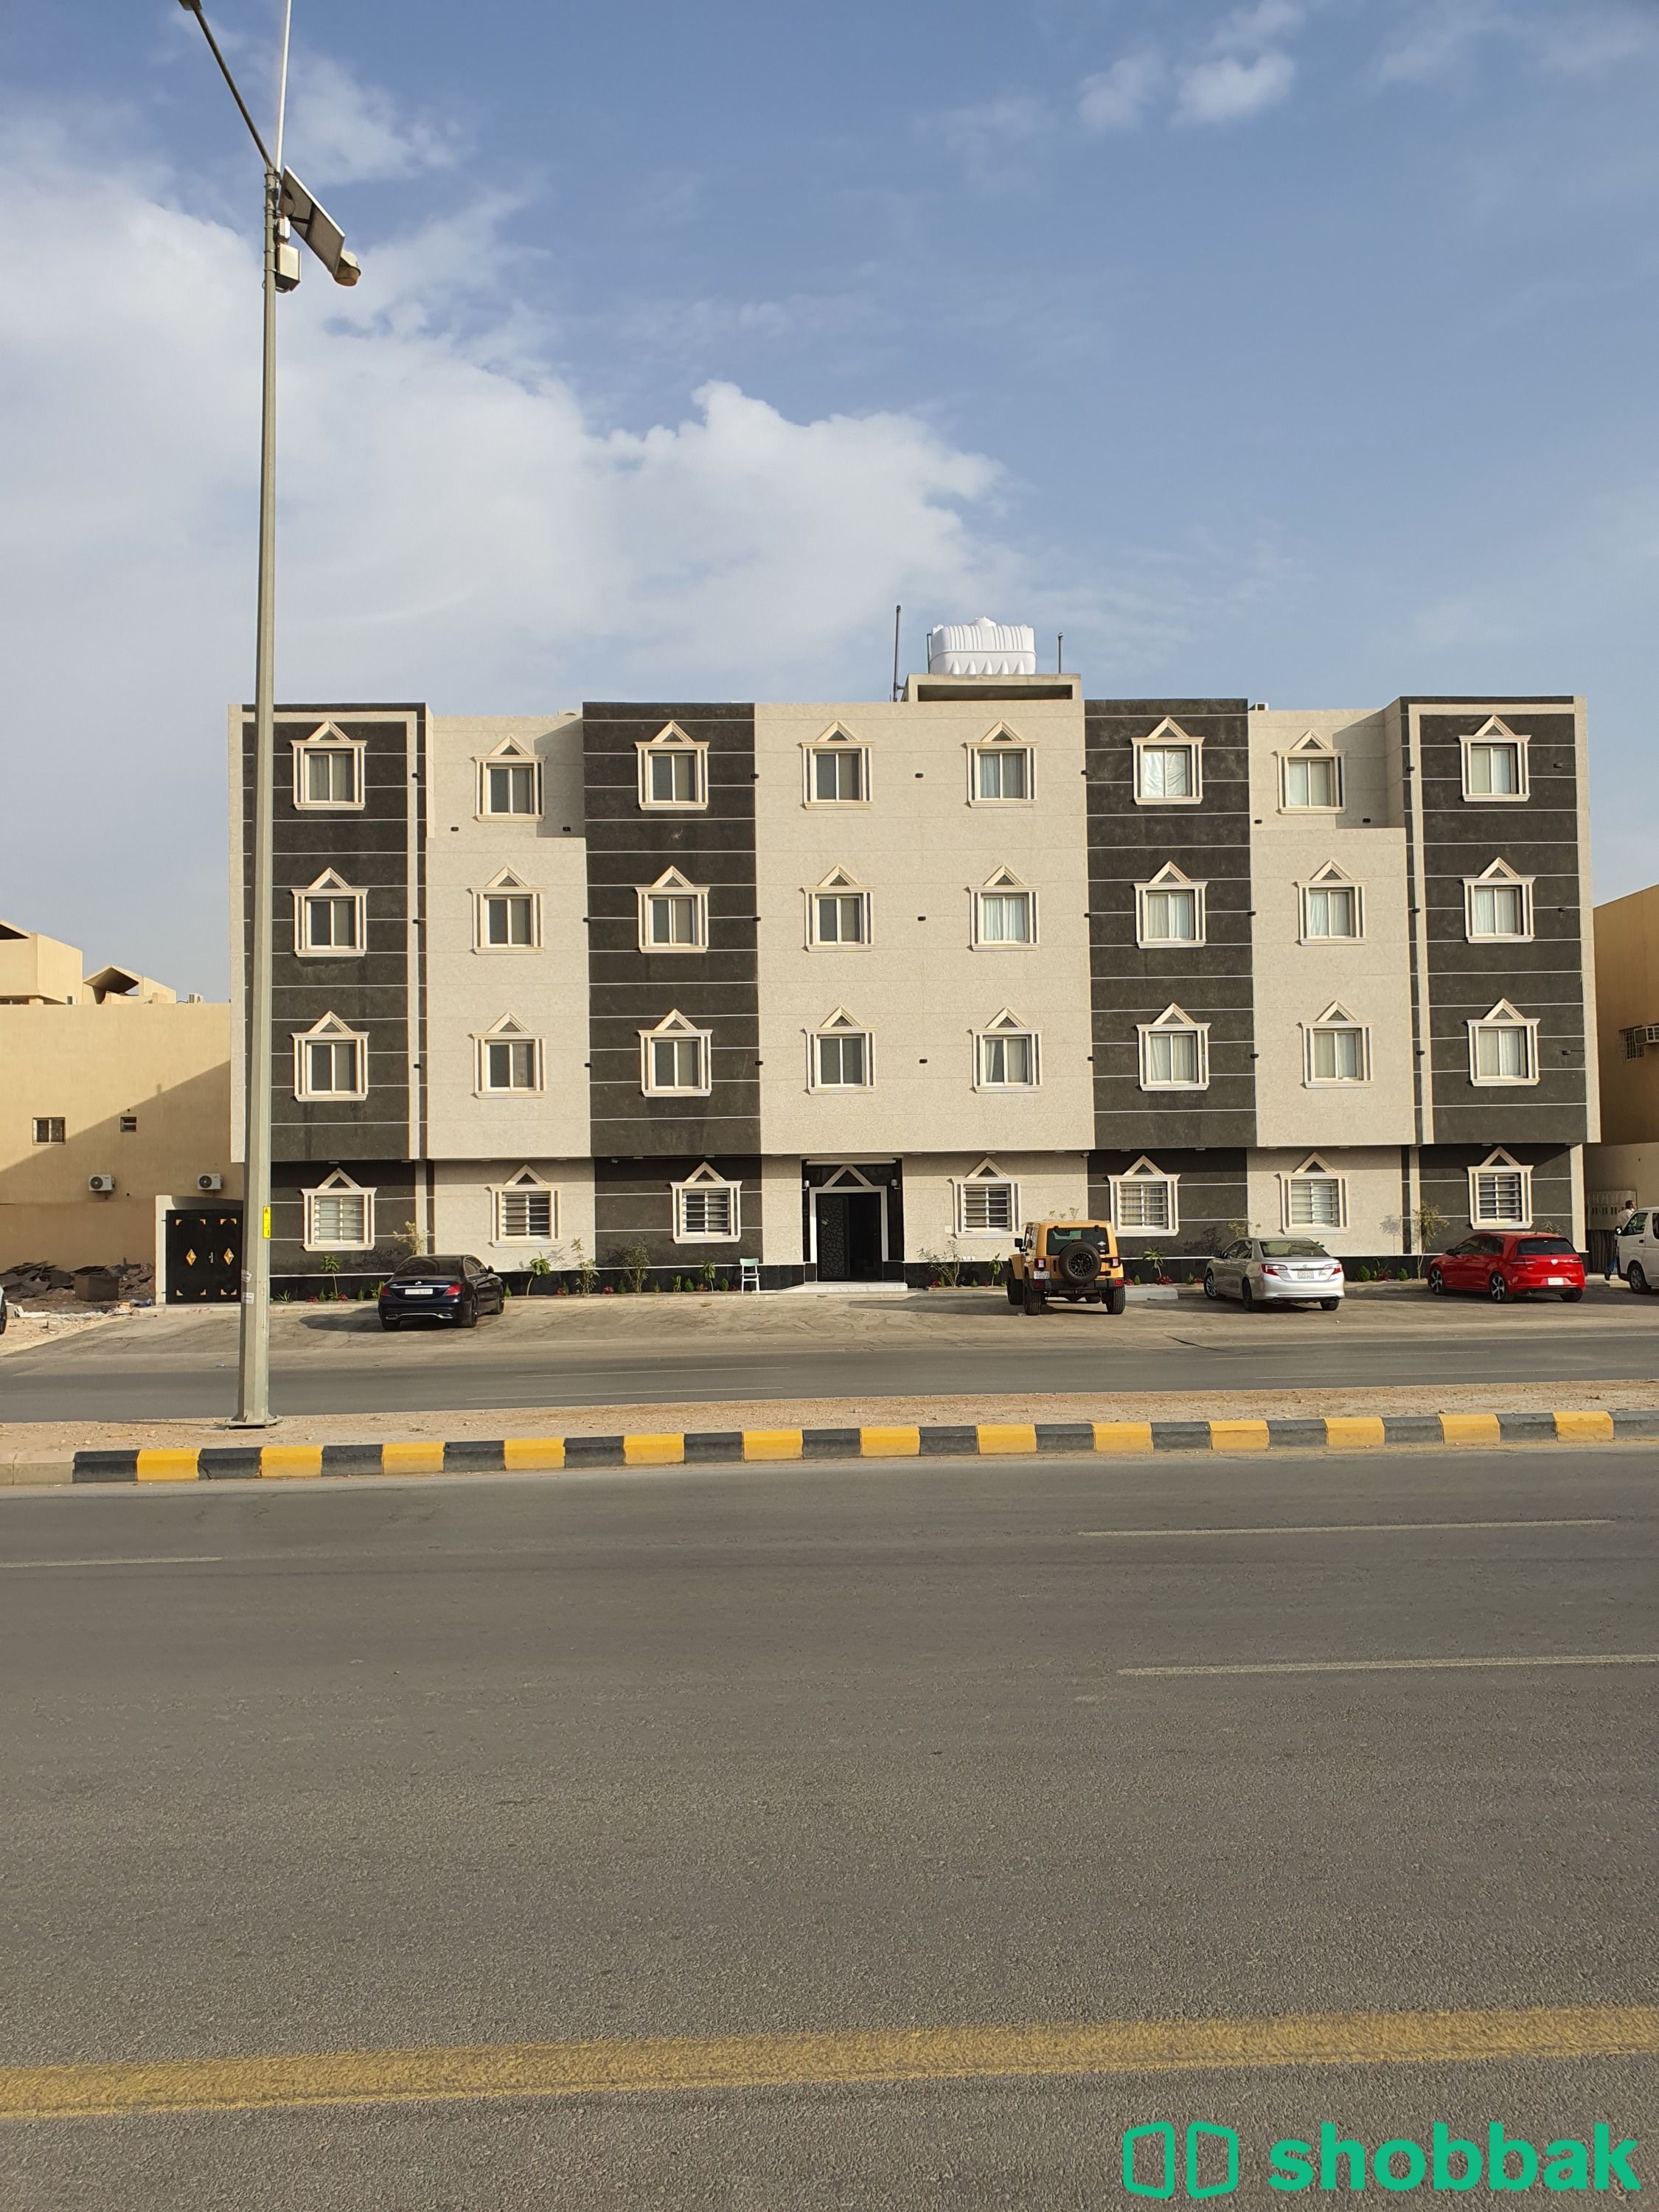 شقة للايجار غرفة و صاله شقة   رقم 20 Shobbak Saudi Arabia